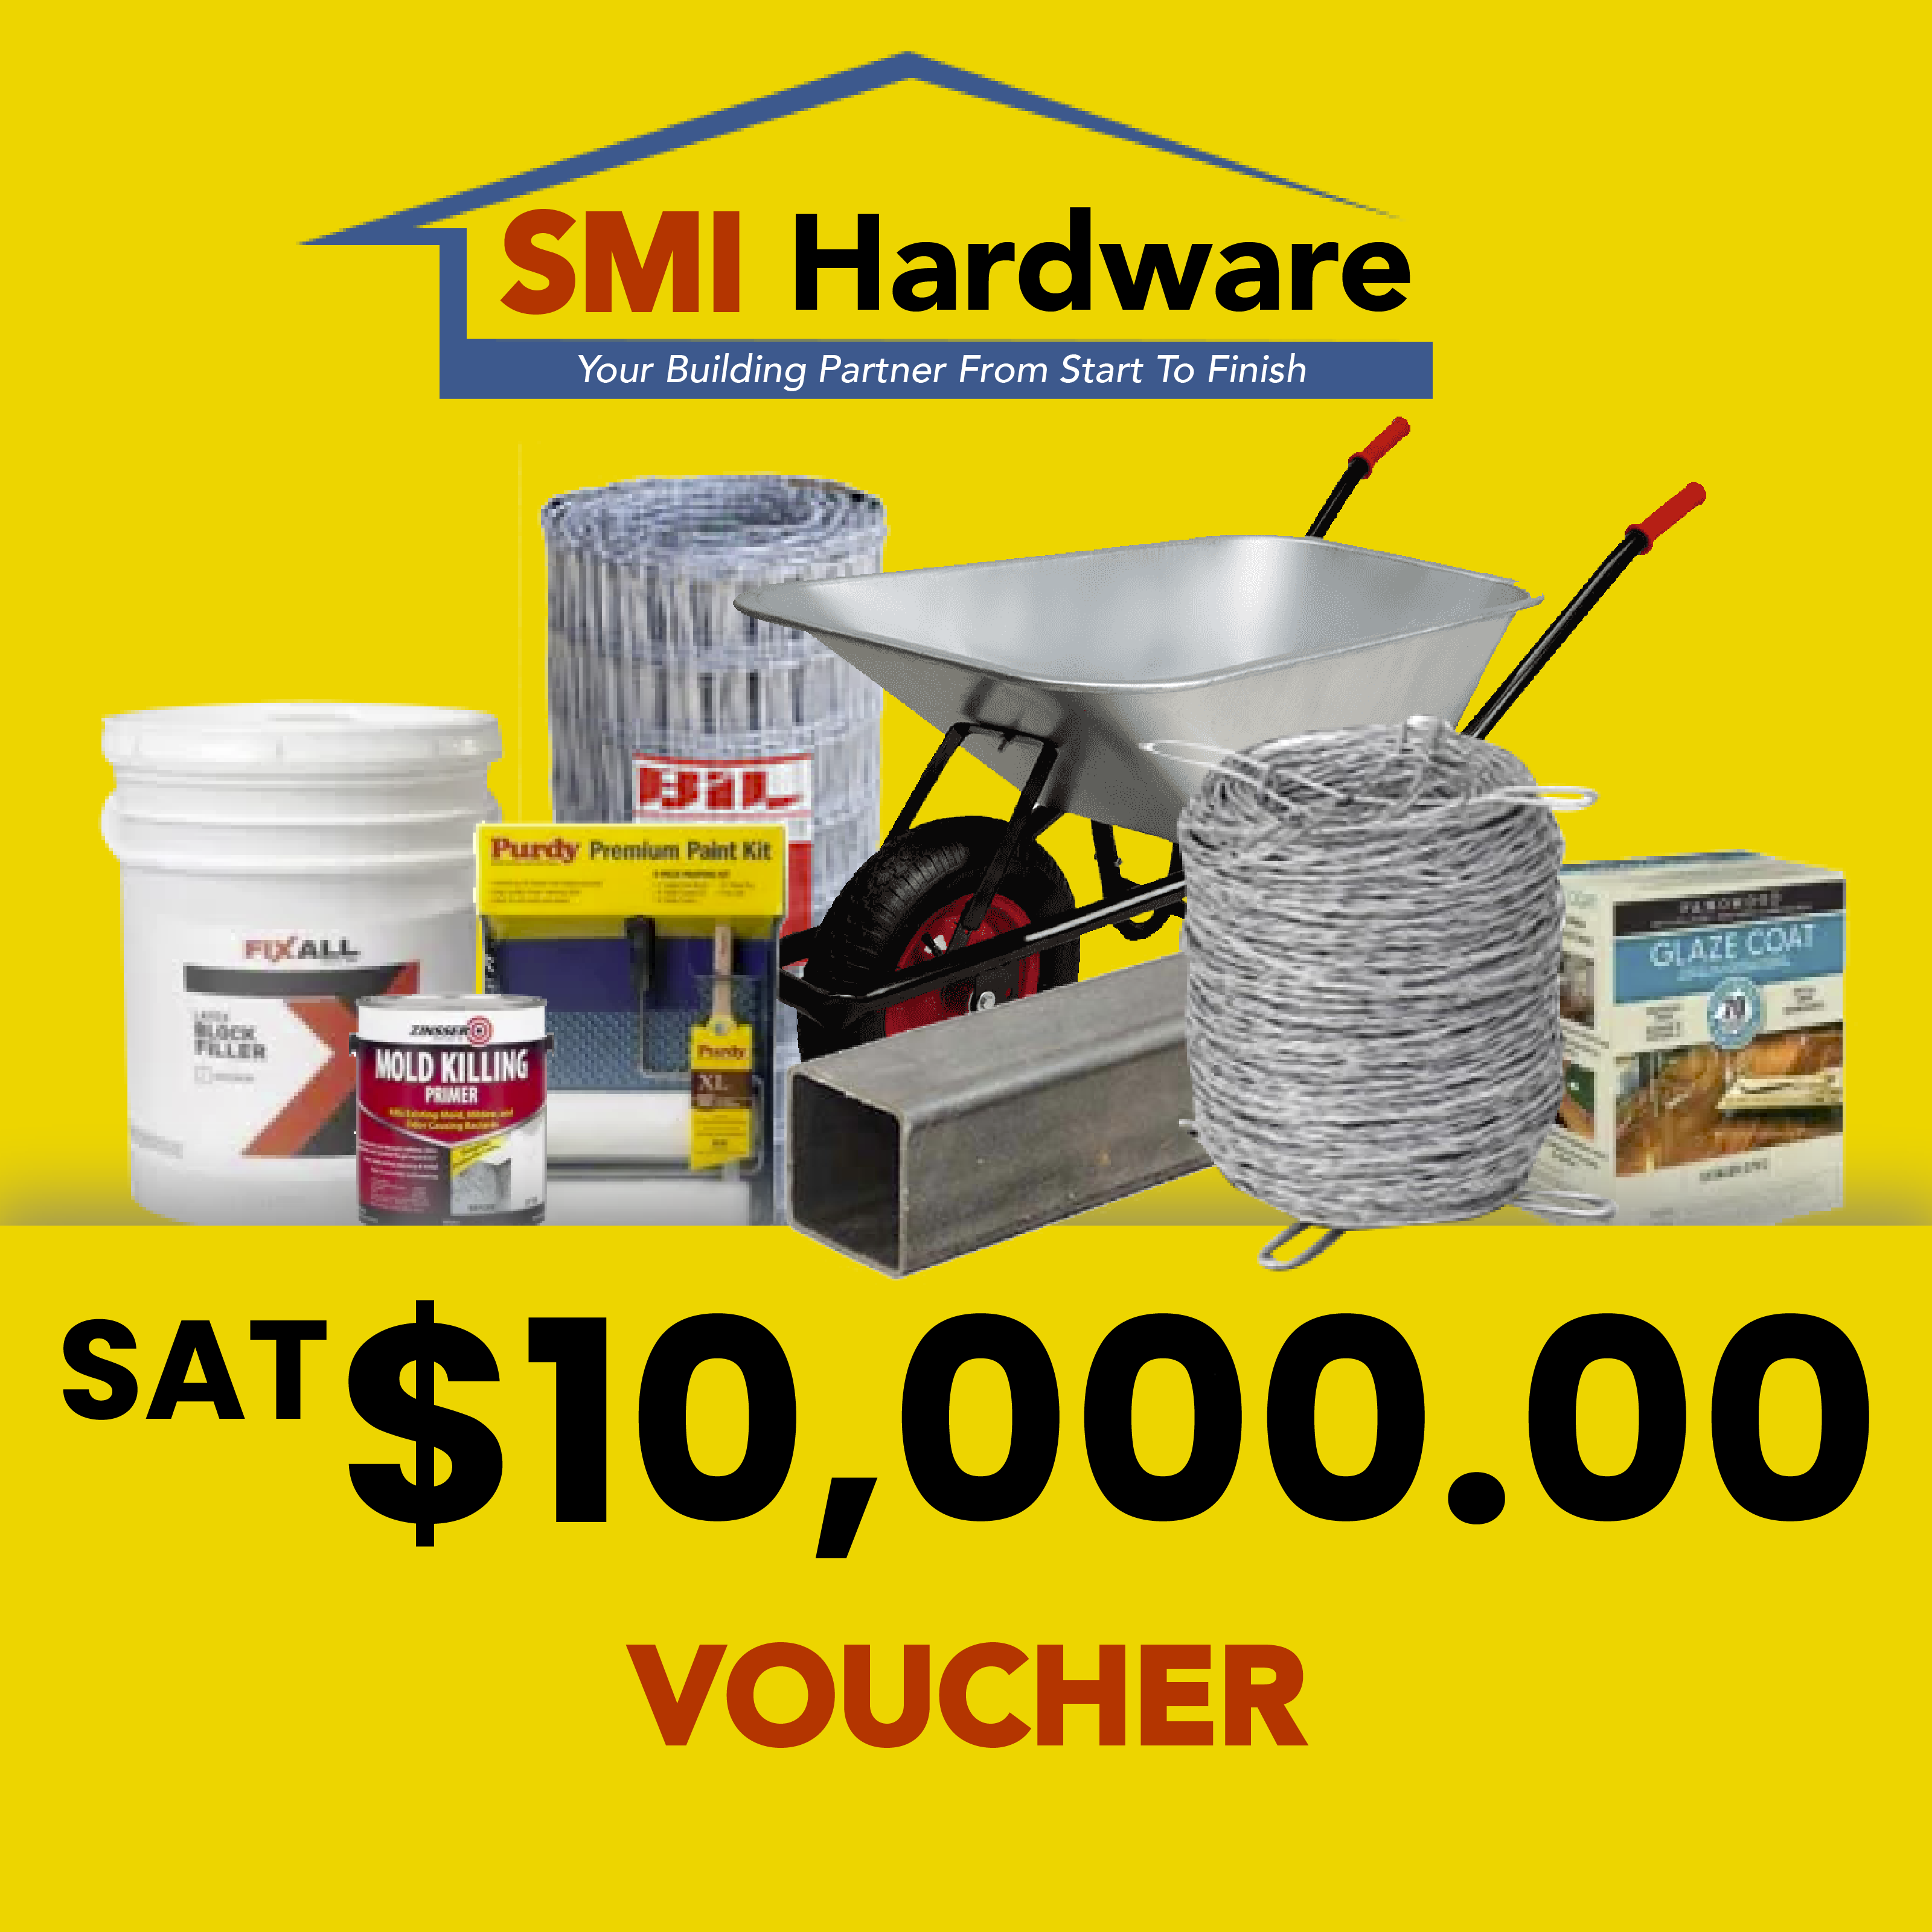 SMI Hardware Gift Voucher WS$10,000